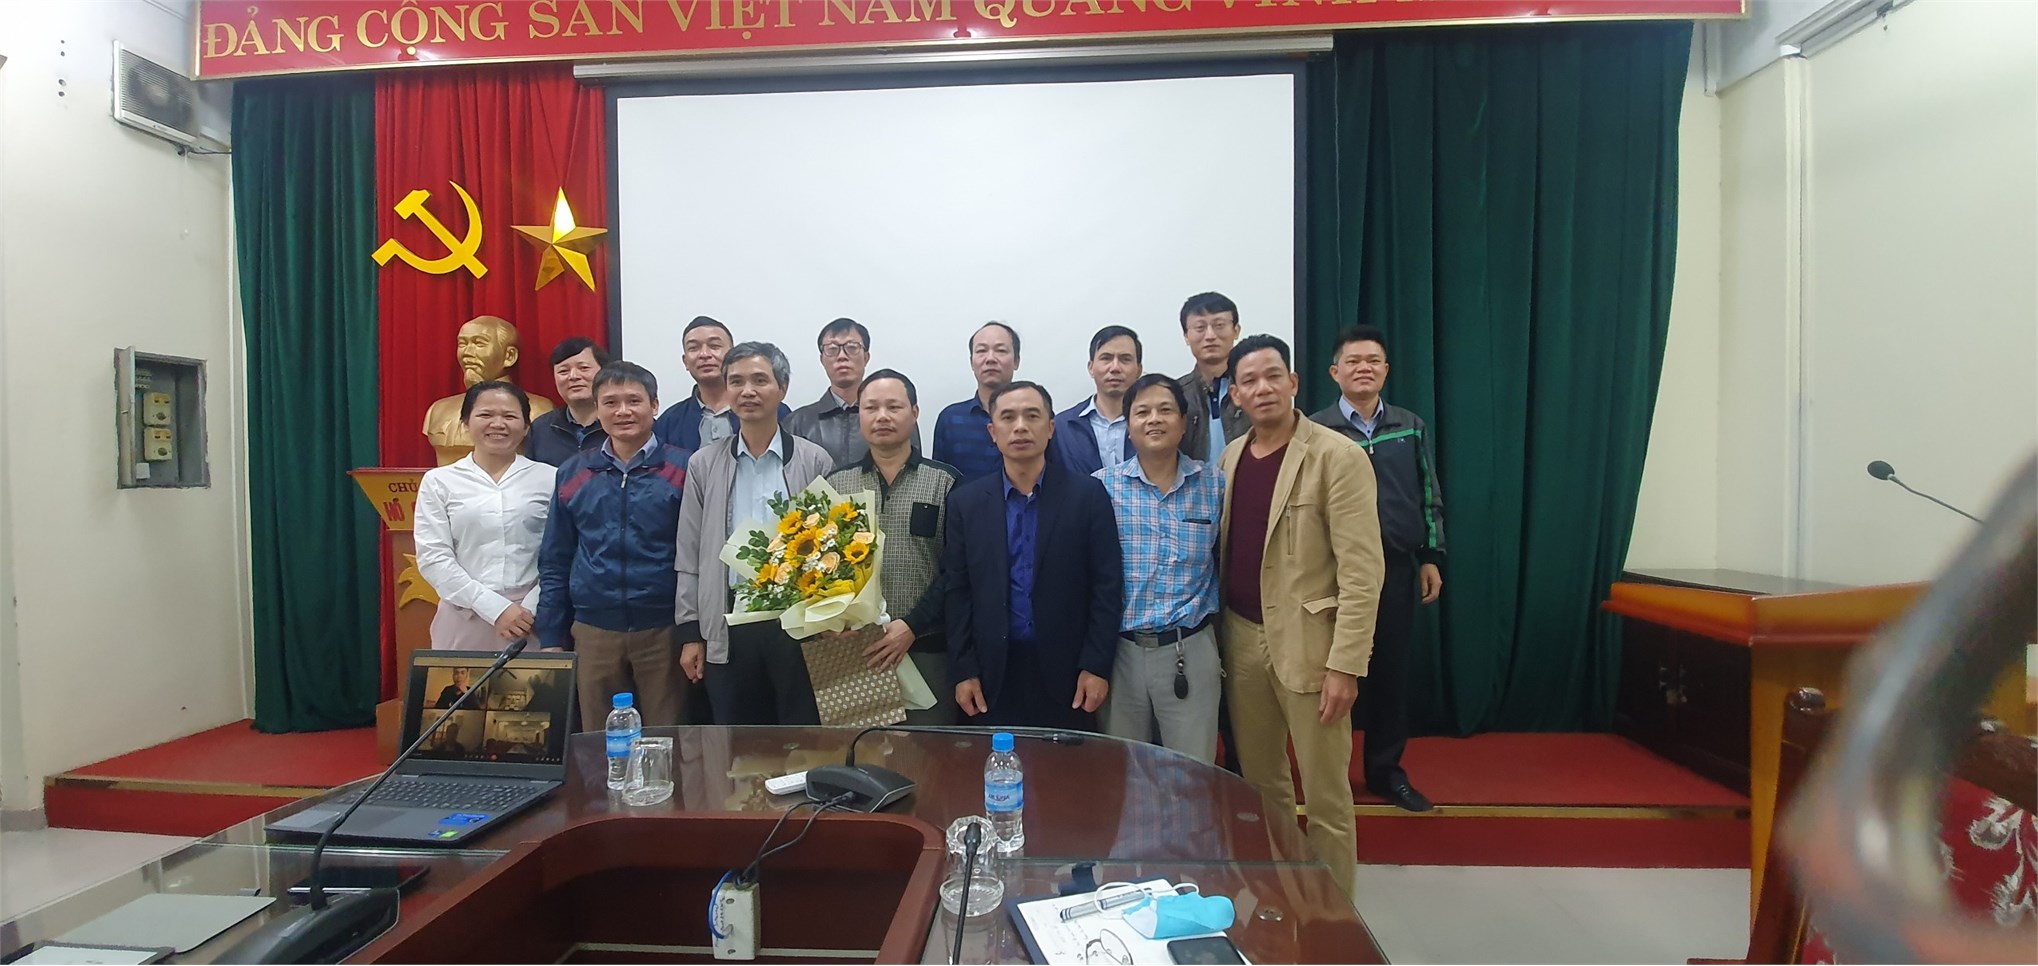 Chi bộ Trung tâm Việt Nhật tổ chức hội nghị tổng kết năm 2021 và chia tay Đảng viên nghỉ hưu theo chế độ